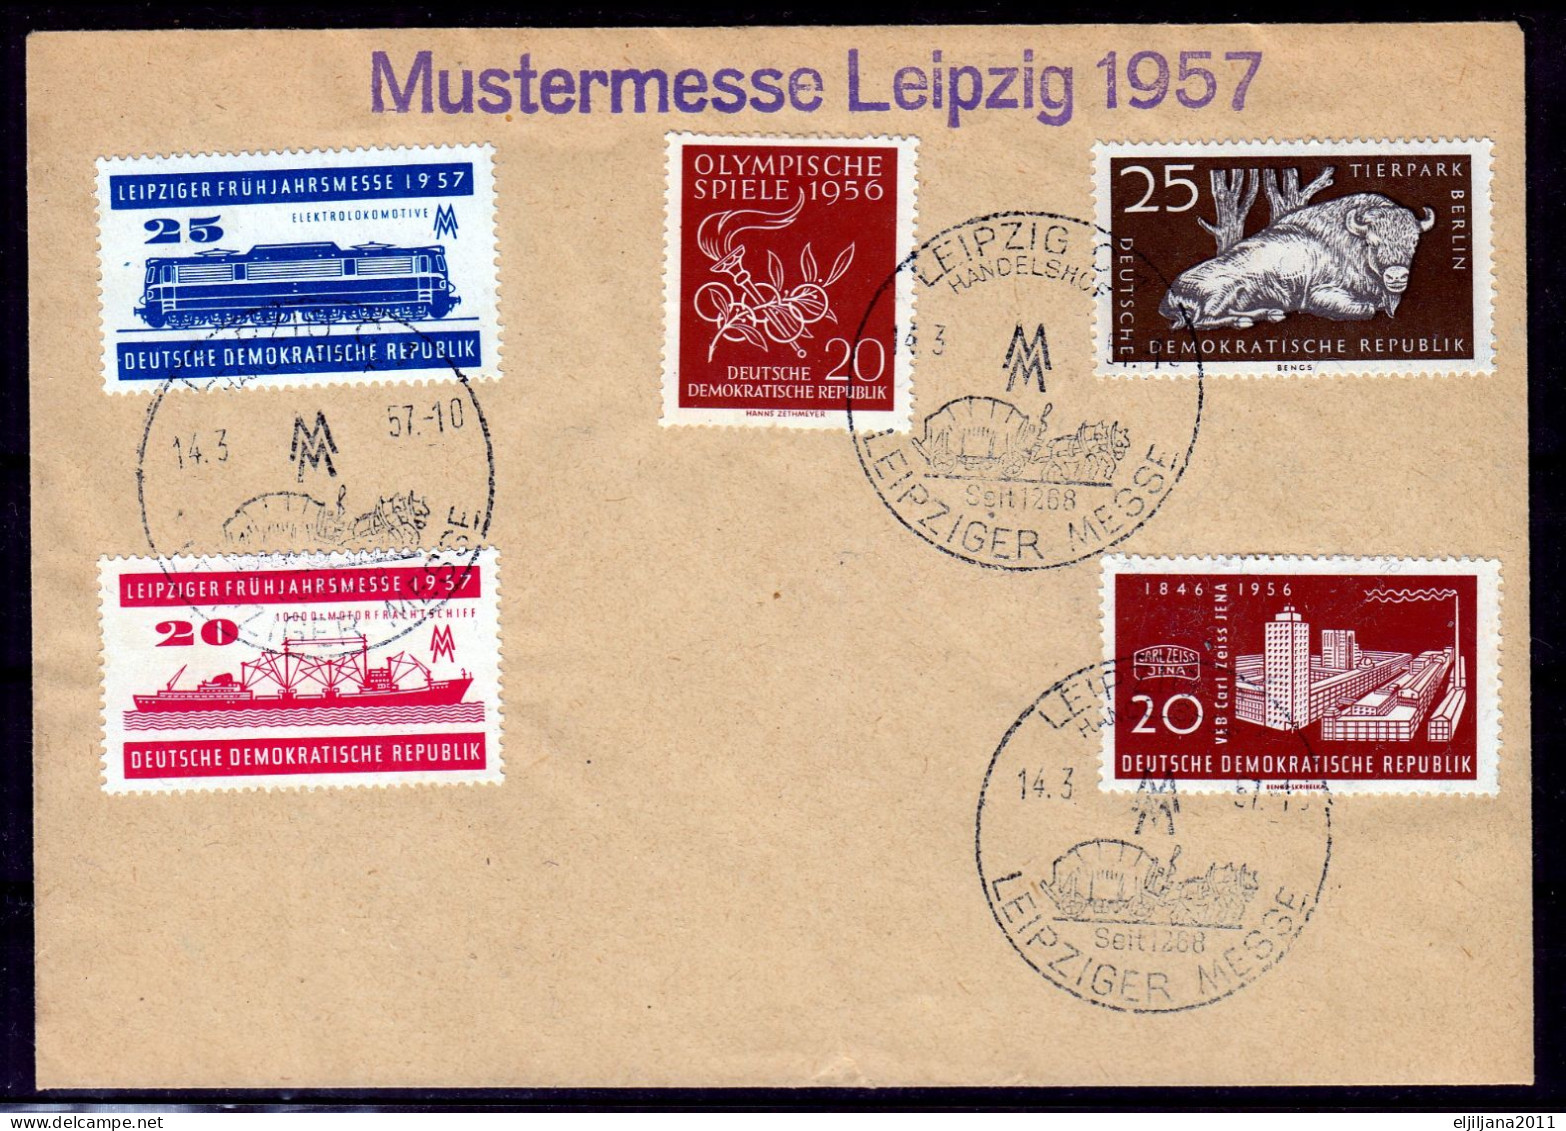 ⁕ Germany 1957 DDR ⁕ Zoo Berlin, Leipzig Fair Postmark On 2 Covers "Mustermesse" - Covers - Used